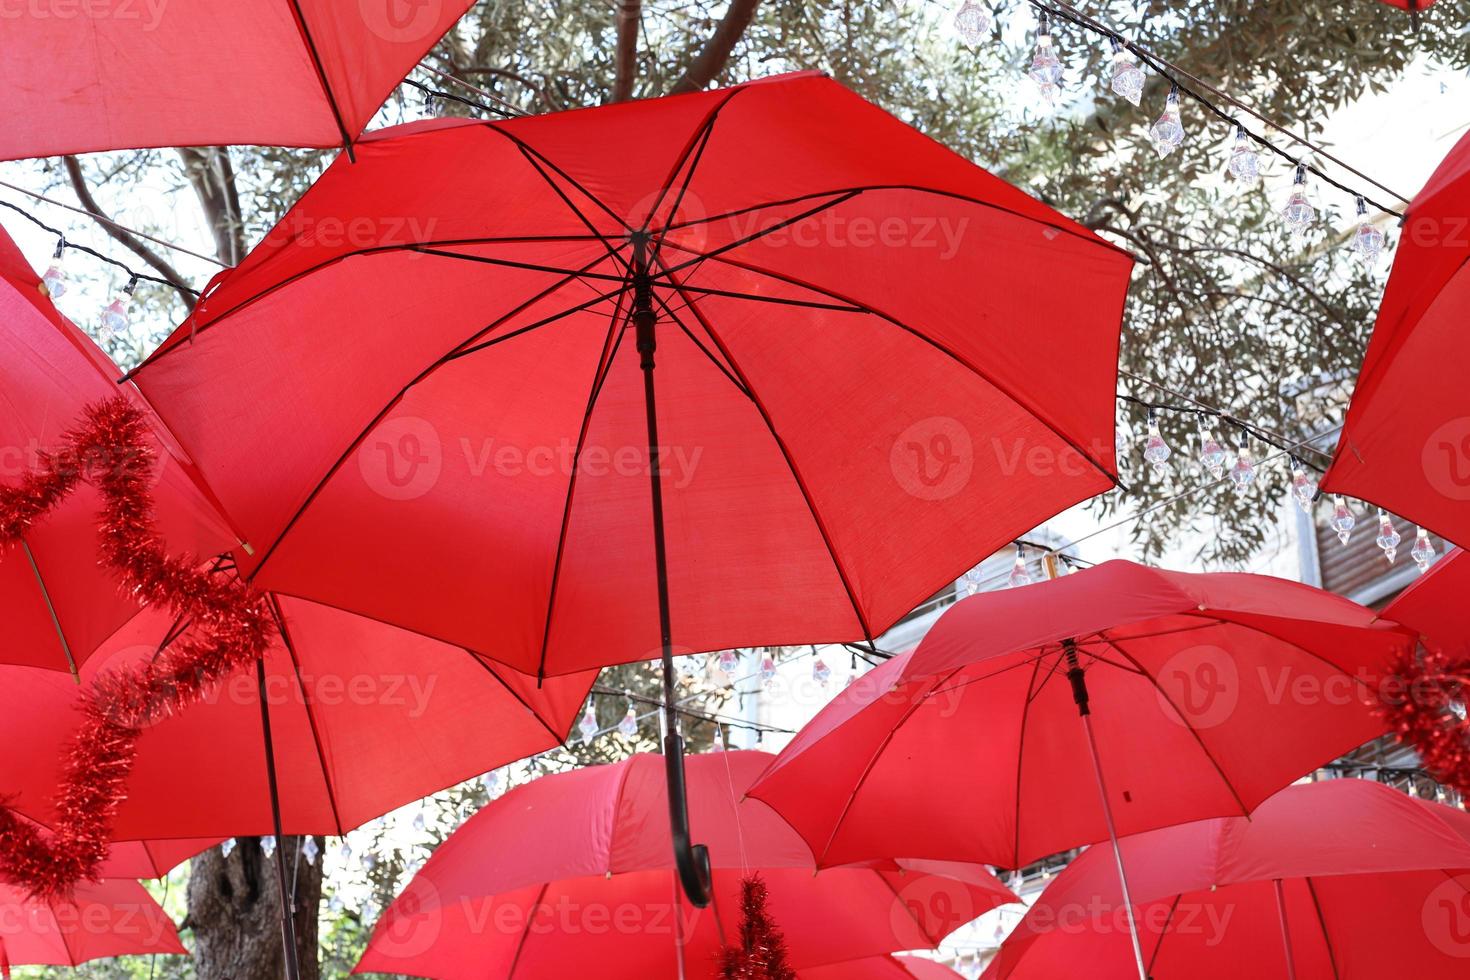 guarda-chuva no parque da cidade perto do mar. foto